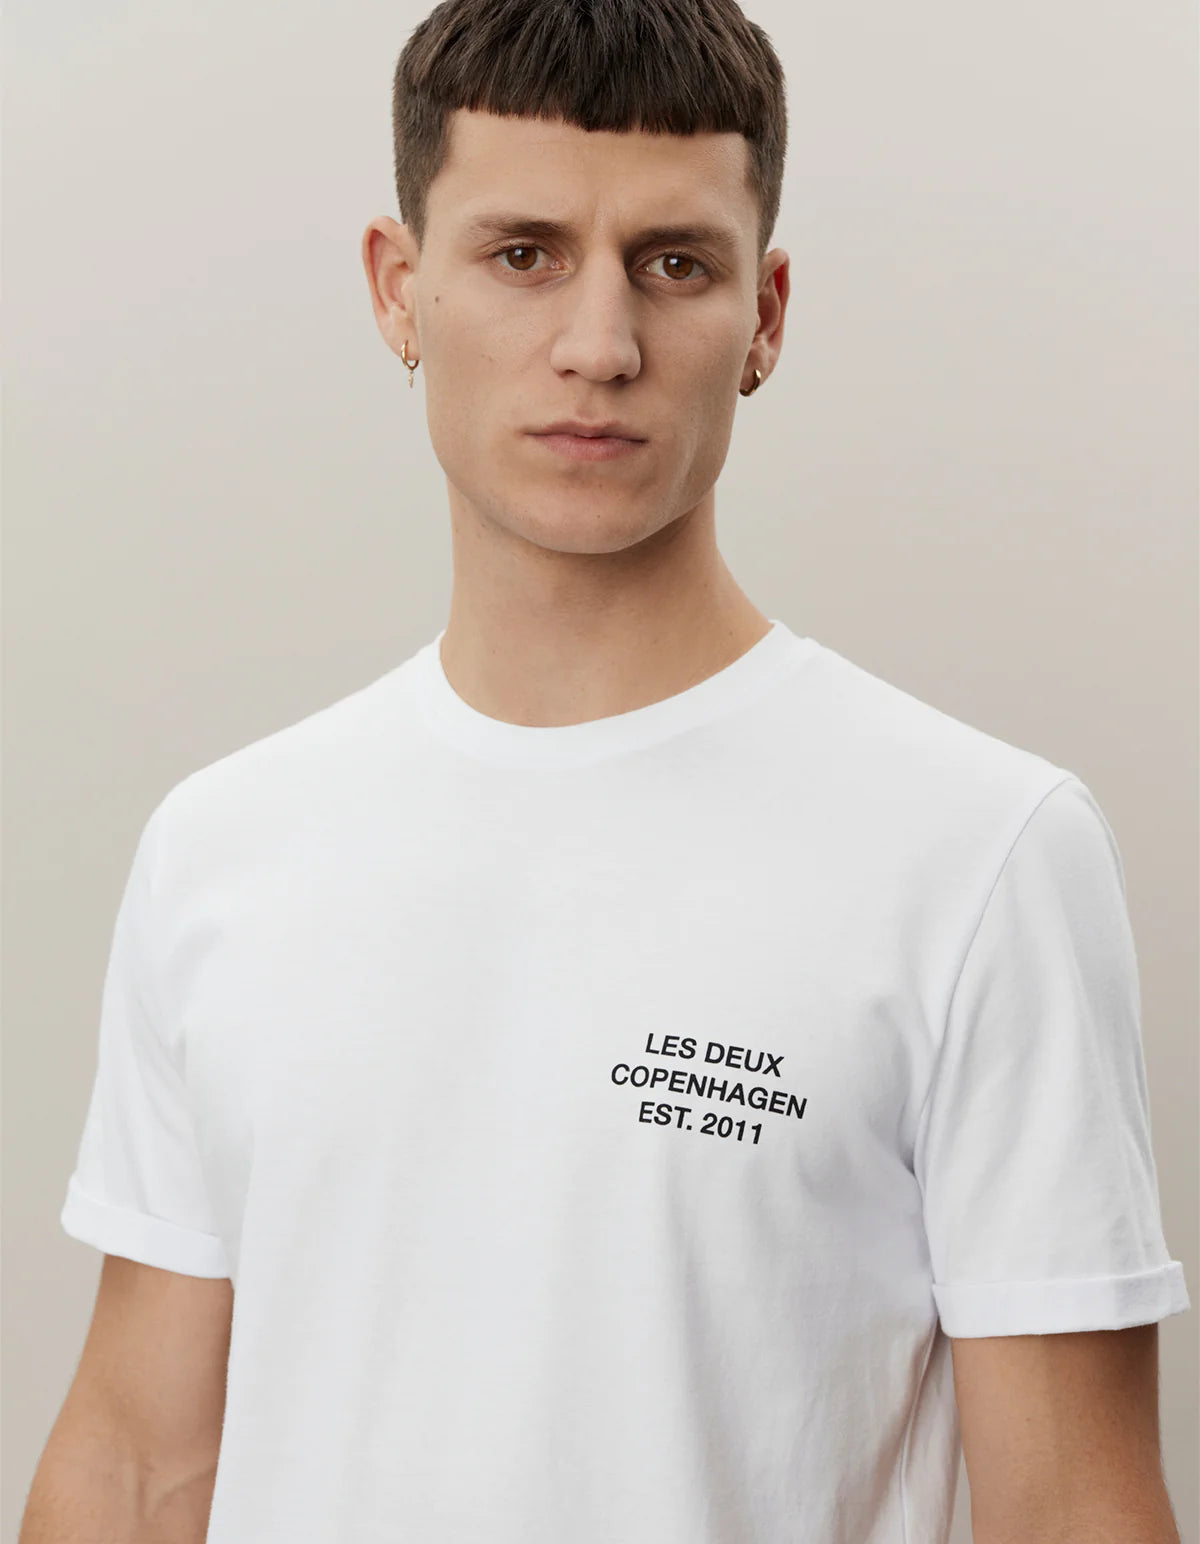 LDM t-shirt white/black - Les Deux Copenhagen